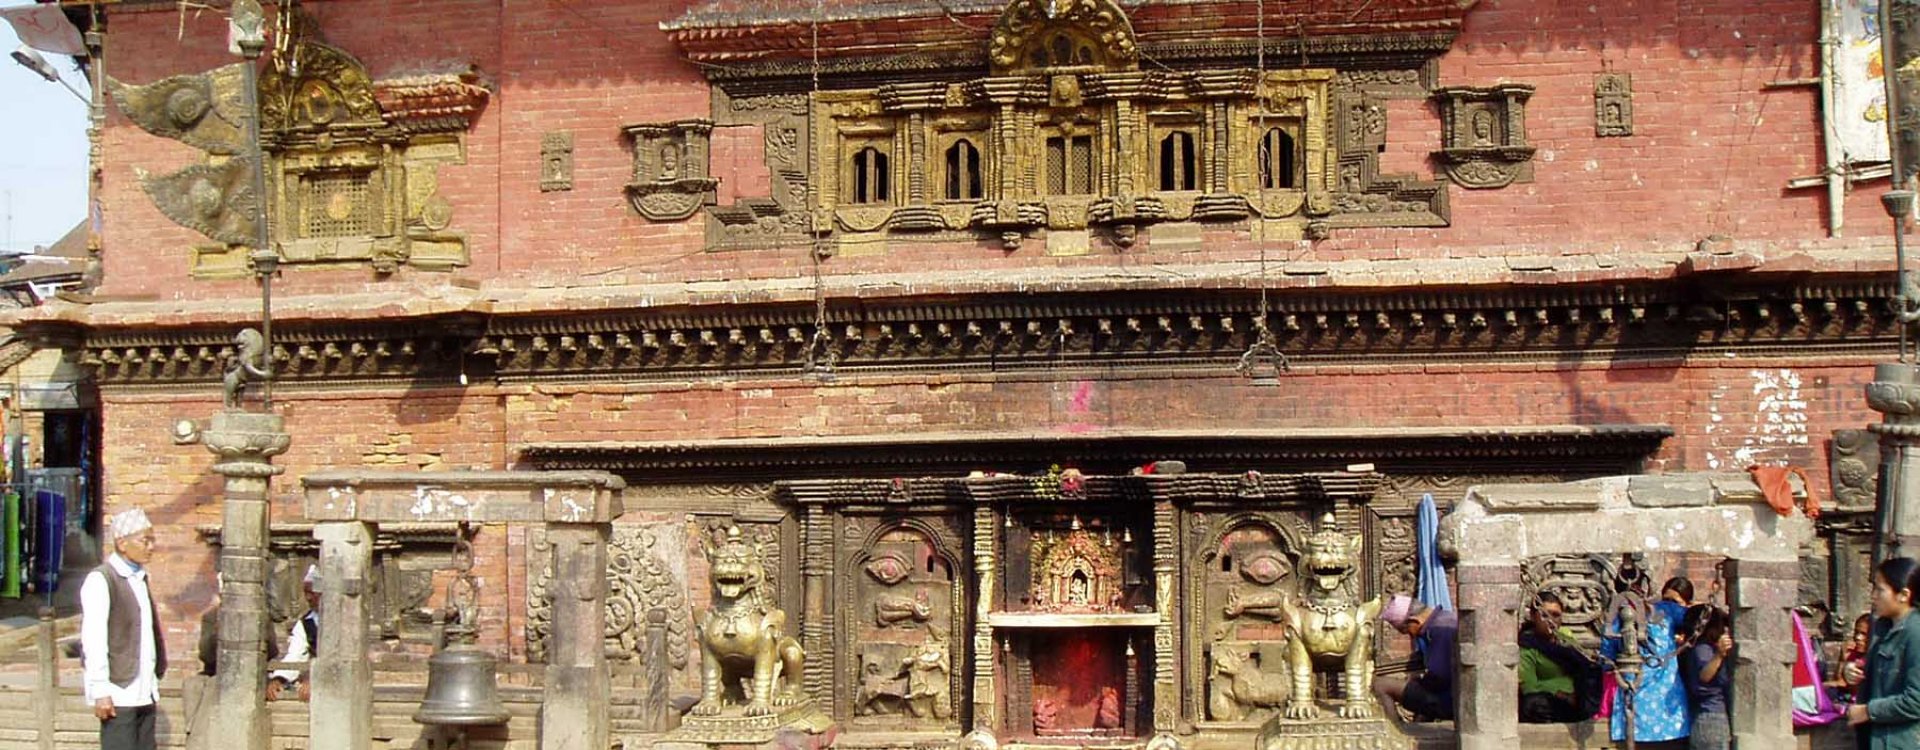 Koningsstad Bhaktapur